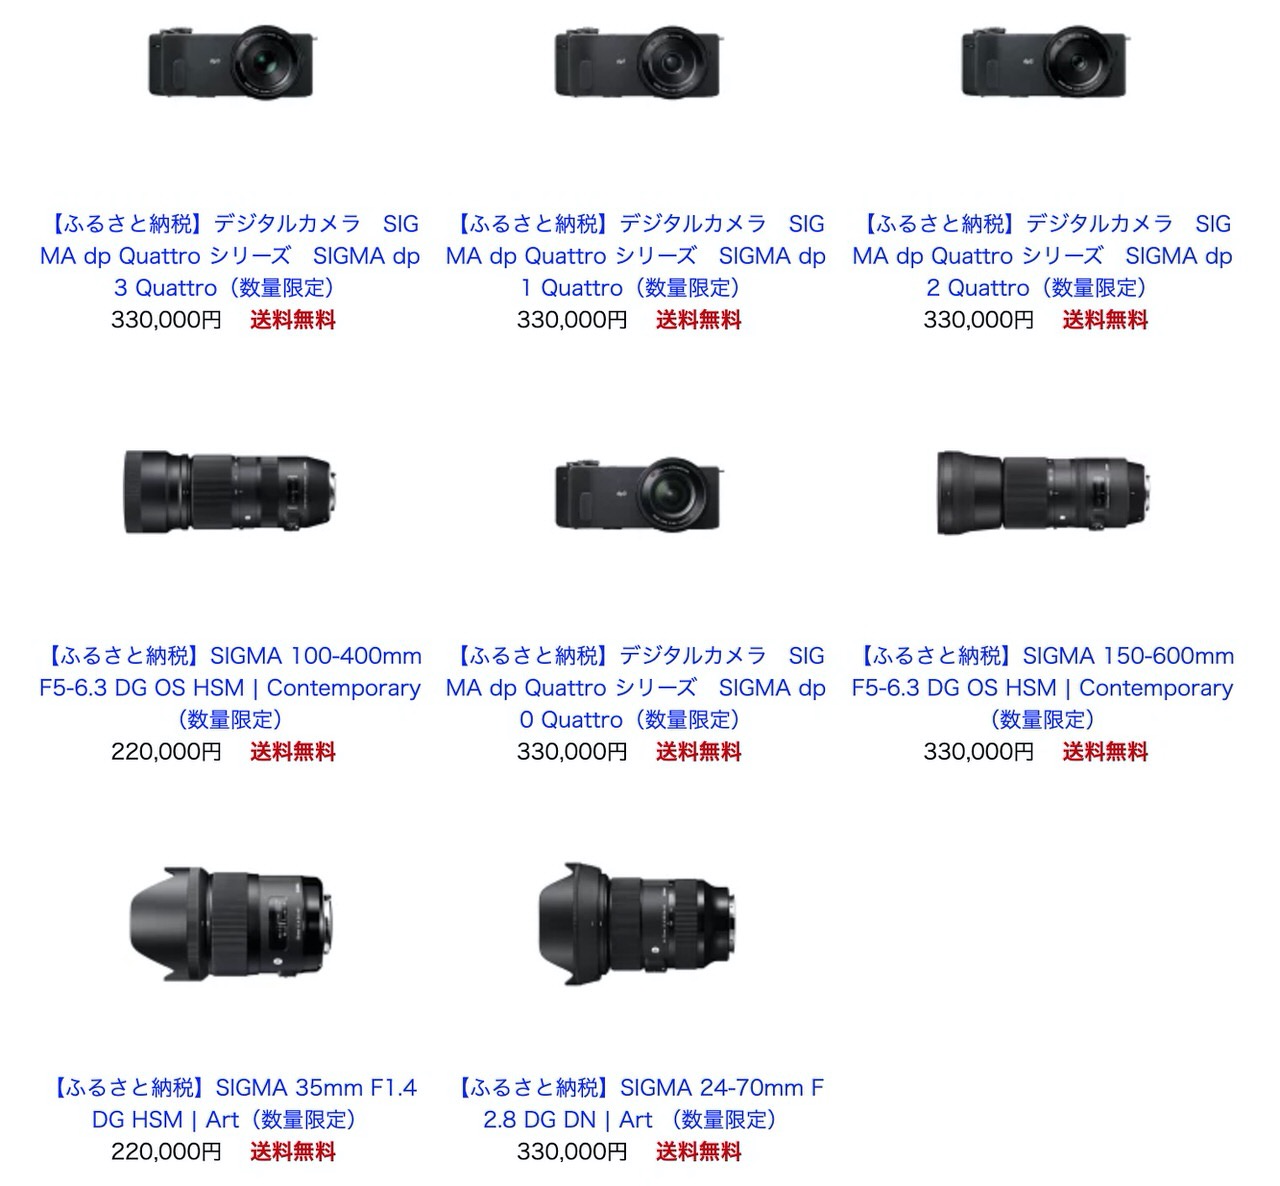 シグマ会津工場がある福島県磐梯町のふるさと納税返礼品にシグマのカメラとレンズが加わる！